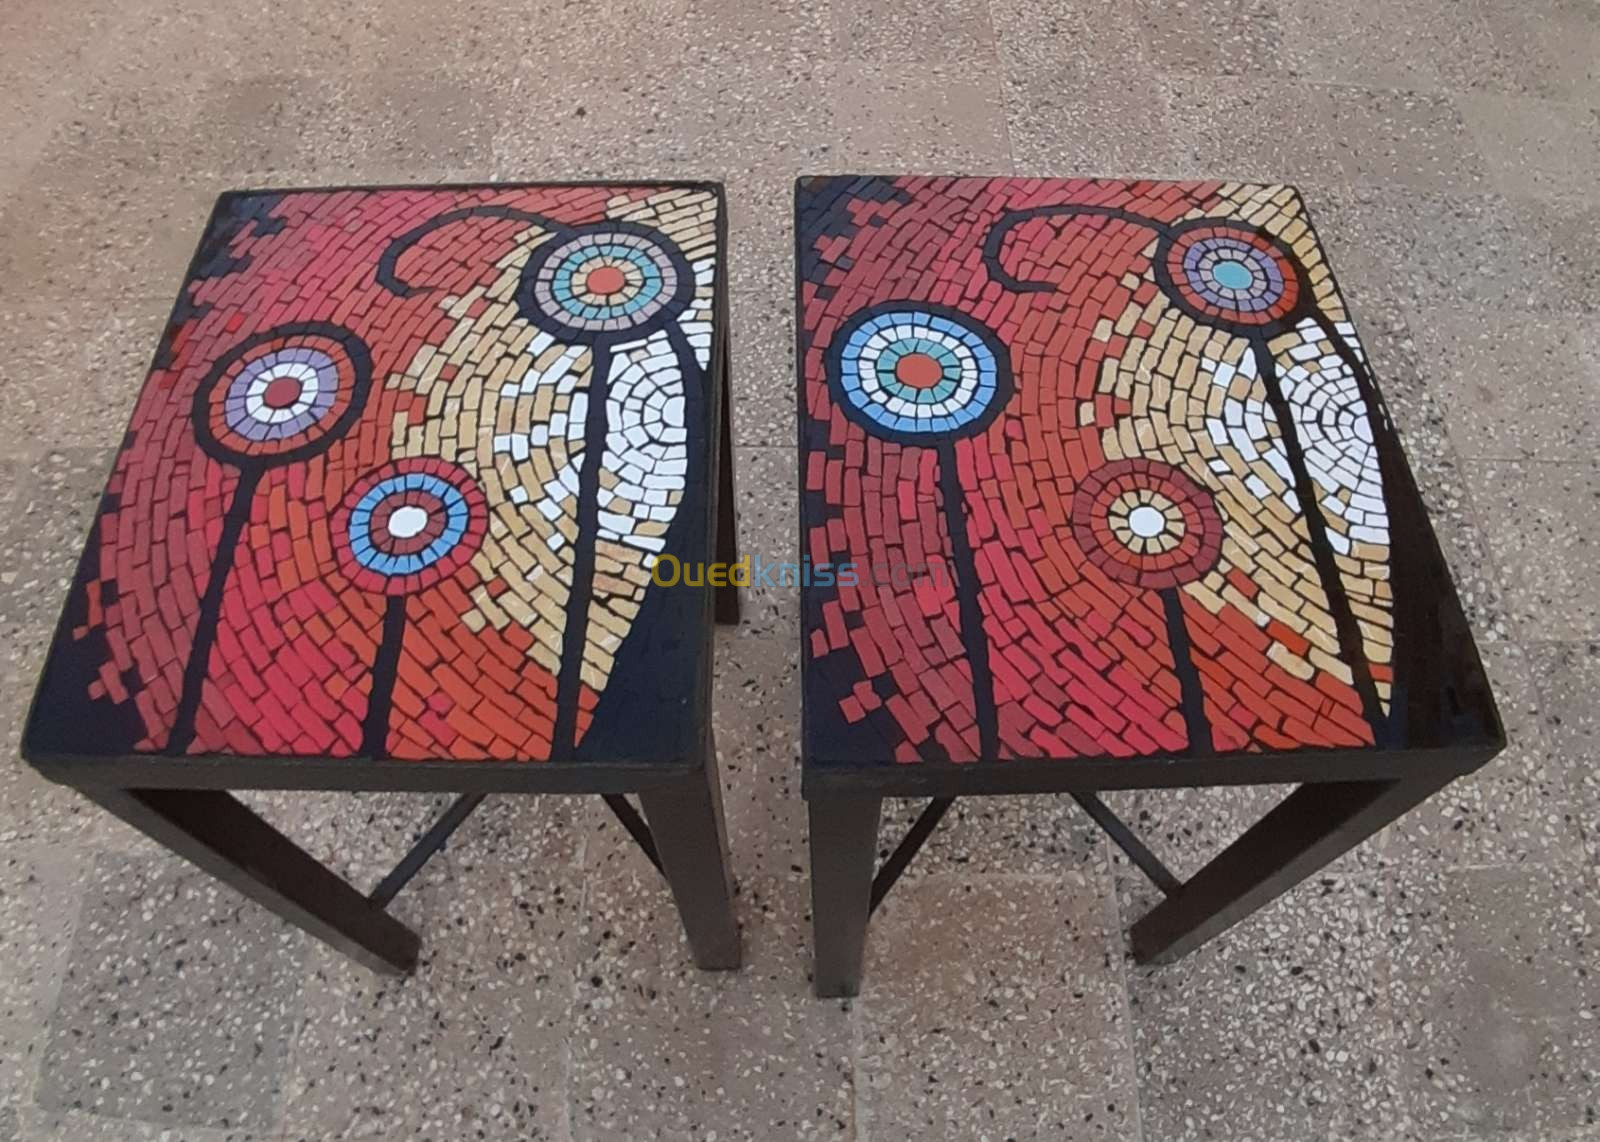 tables basses ovales et rondes en mosaïque fer forgé et bois